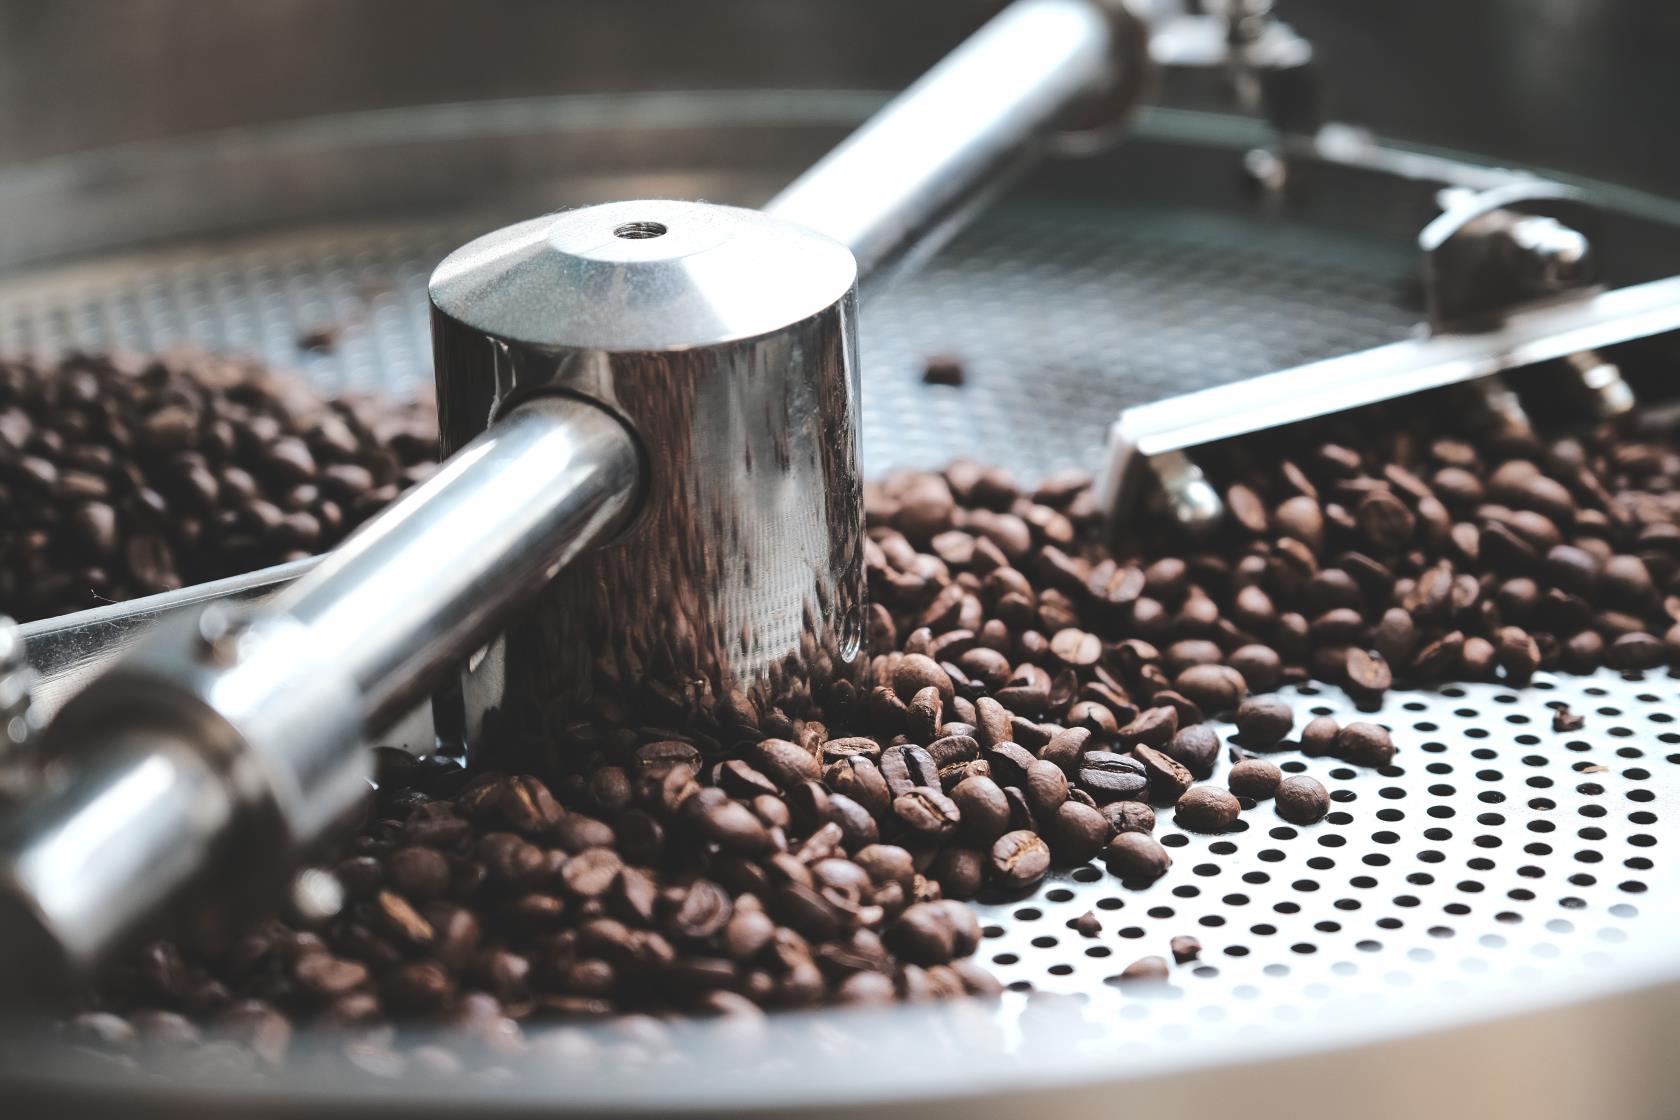 9 erros de preparação de café que estão arruinando sua xícara de café